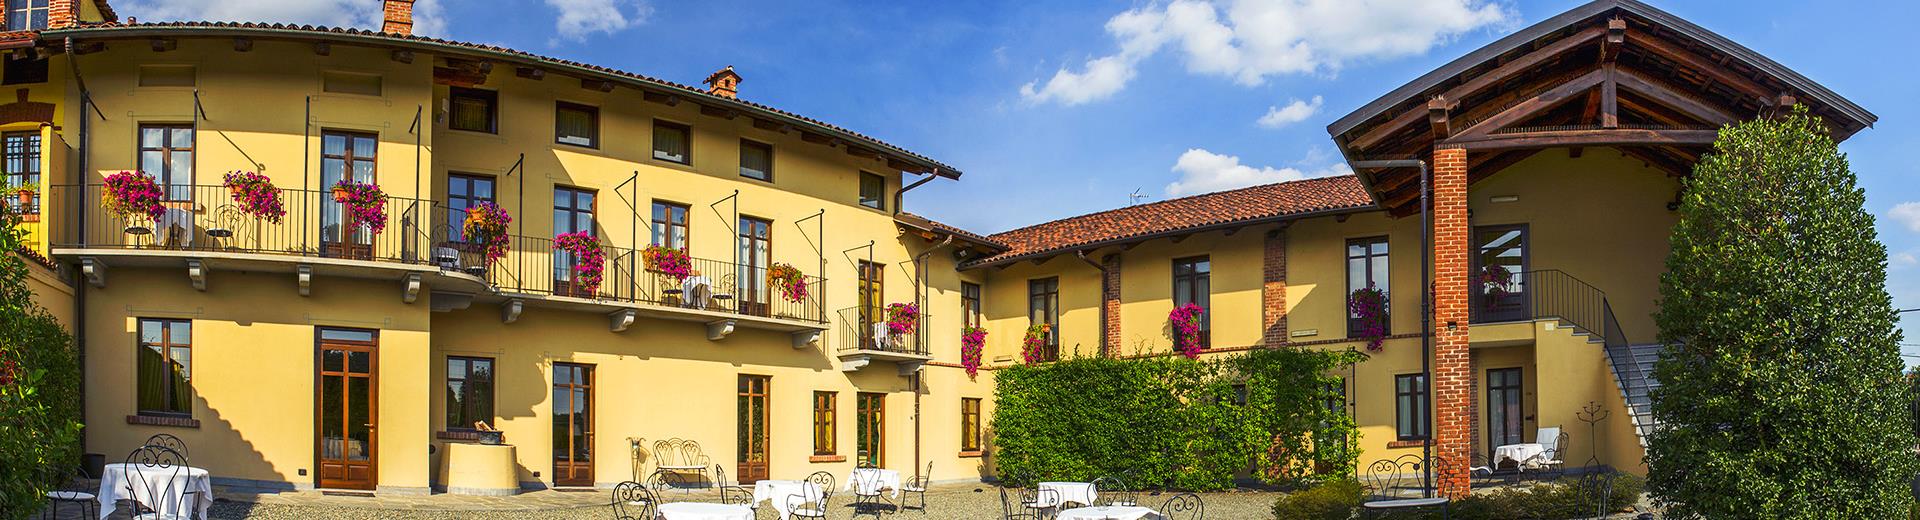 Le Best Western Plus Hôtel Le Rondini vous offre la solution idéale pour votre séjour. A quelques minutes de l aéroport de Caselle et à une courte distance du centre de Turin et du stade Allianz Stadium Juventus.